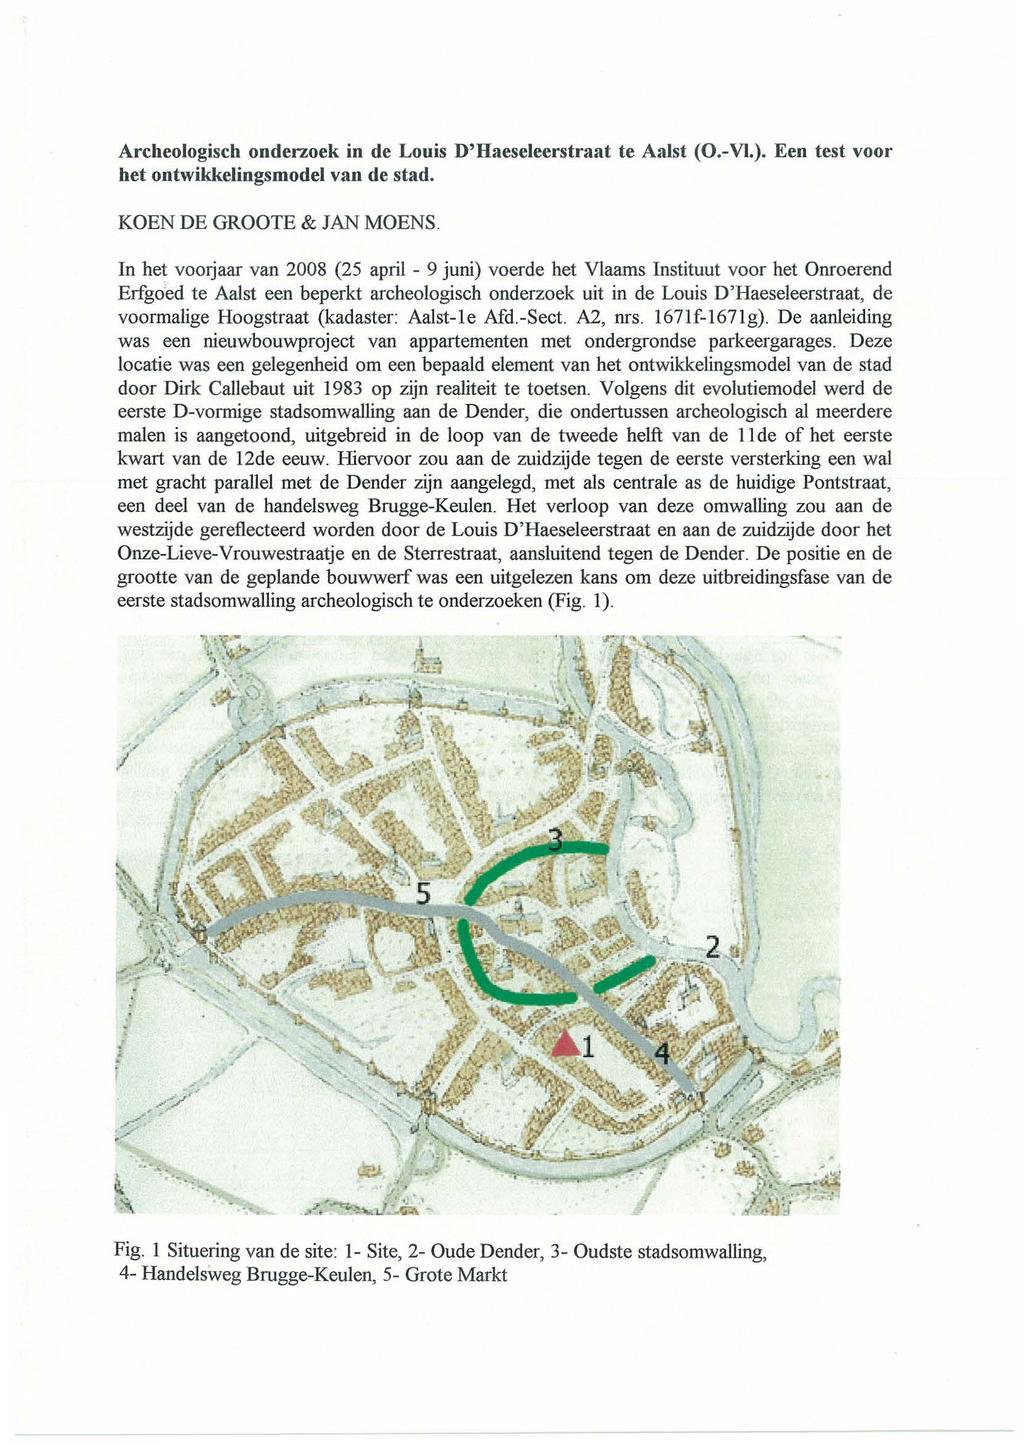 Archeologisch onderzoek in de Louis D'Haeseleerstraat te Aalst (0.-VI.). Een test voor het ontwikkelingsmodel van de stad. KOEN DE GROOTE & JAN MOENS.